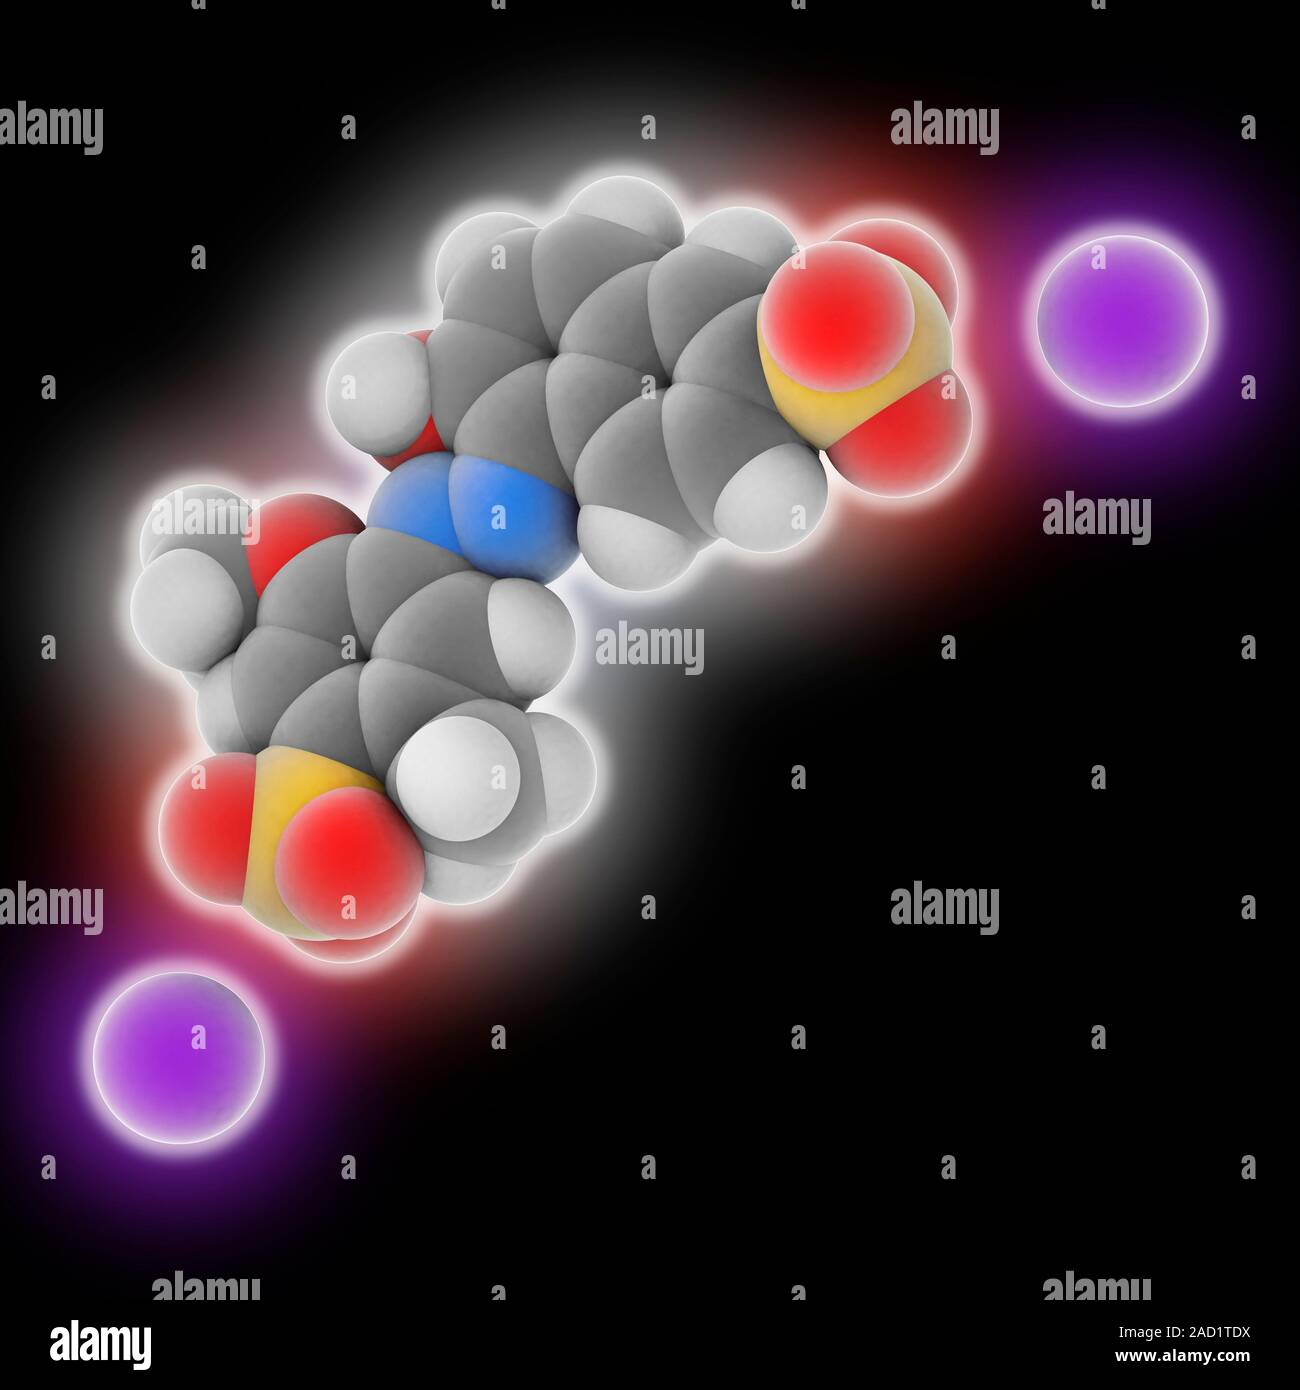 Allurarot AC Lebensmittelfarbe. Molekulares Modell des Roten azo compound  Allurarot AC (C 18 H 14 N 2. Na 2. O 8. S2), als essen Farbstoff E129  bekannt. Atome sind wie dargestellt Stockfotografie - Alamy